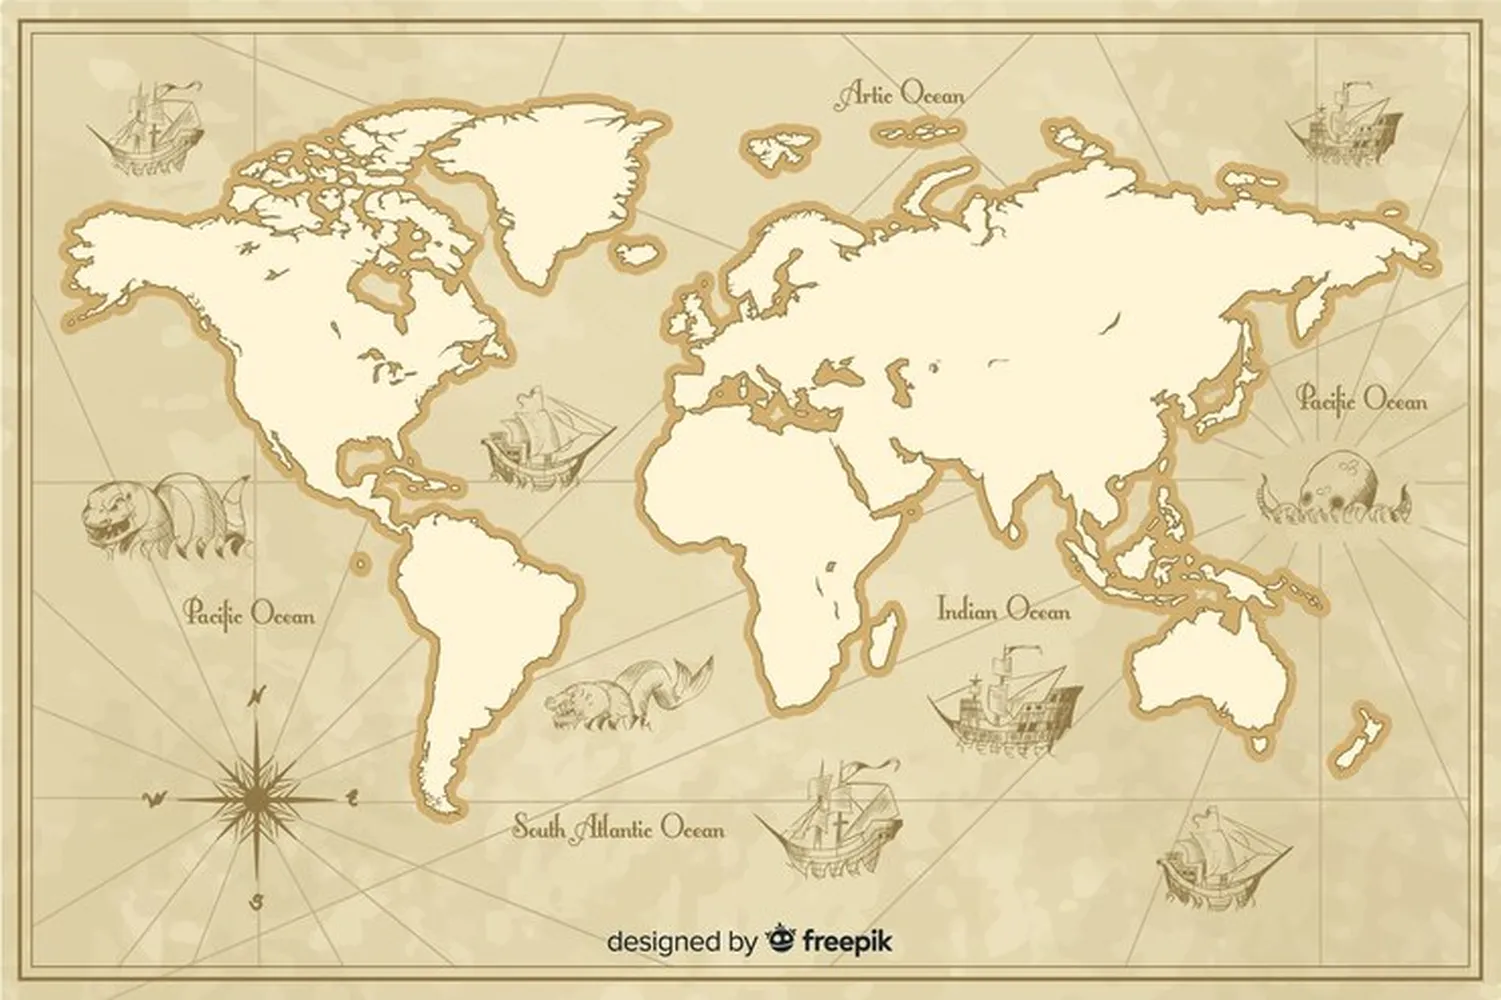 پوستر 3 بعدی طرح نقشه جهان با جزئیات